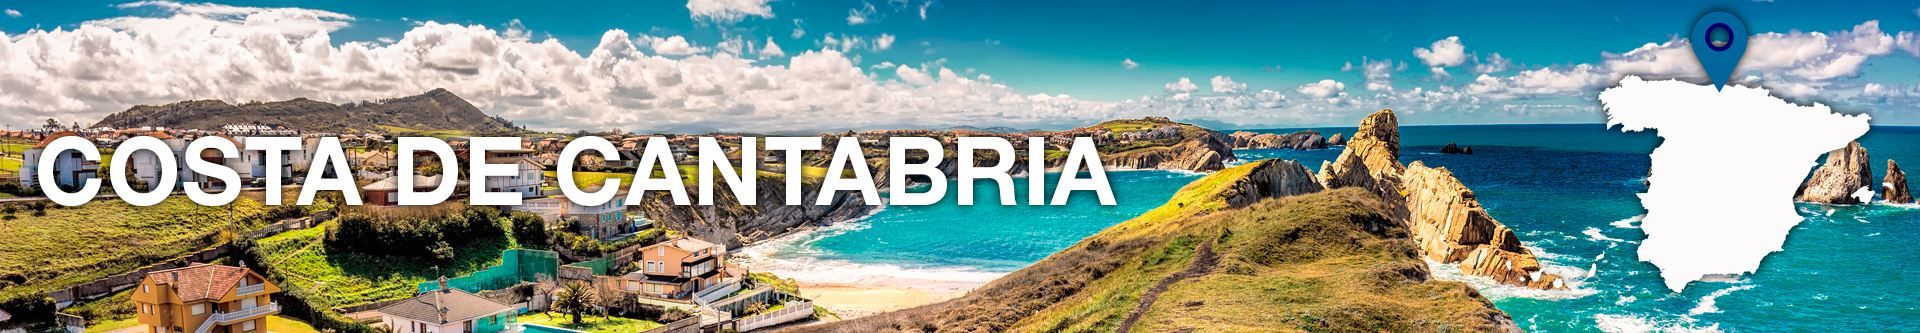 Hoteles en Costa de Cantabria - No pagues más por lo mismo